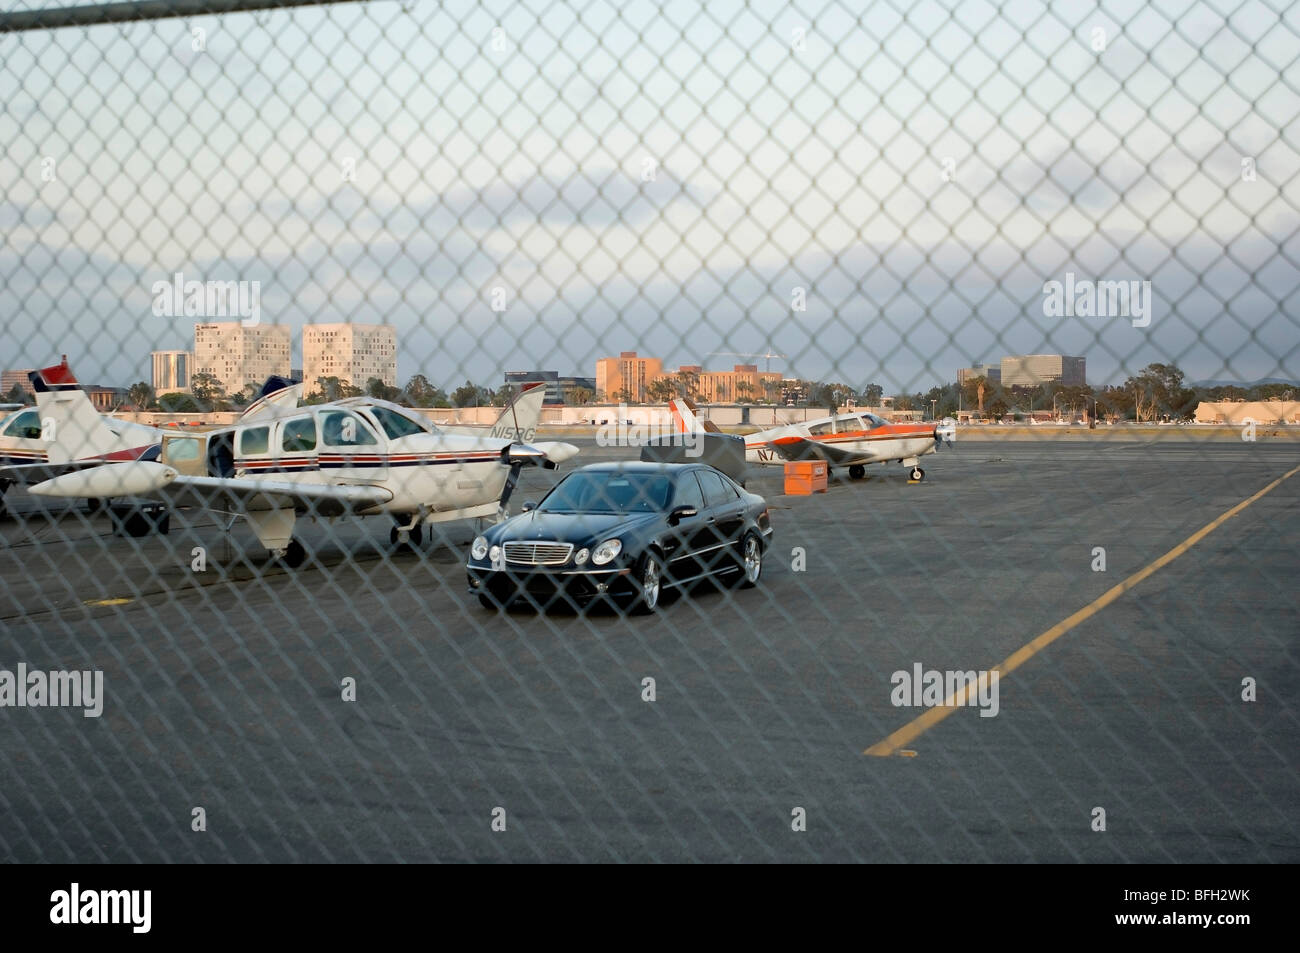 Dietro il recinto aeroportuale, un uomo può essere visto all'interno del pozzetto del suo motore unico aereo privato svolgendo attività di preflight. Foto Stock